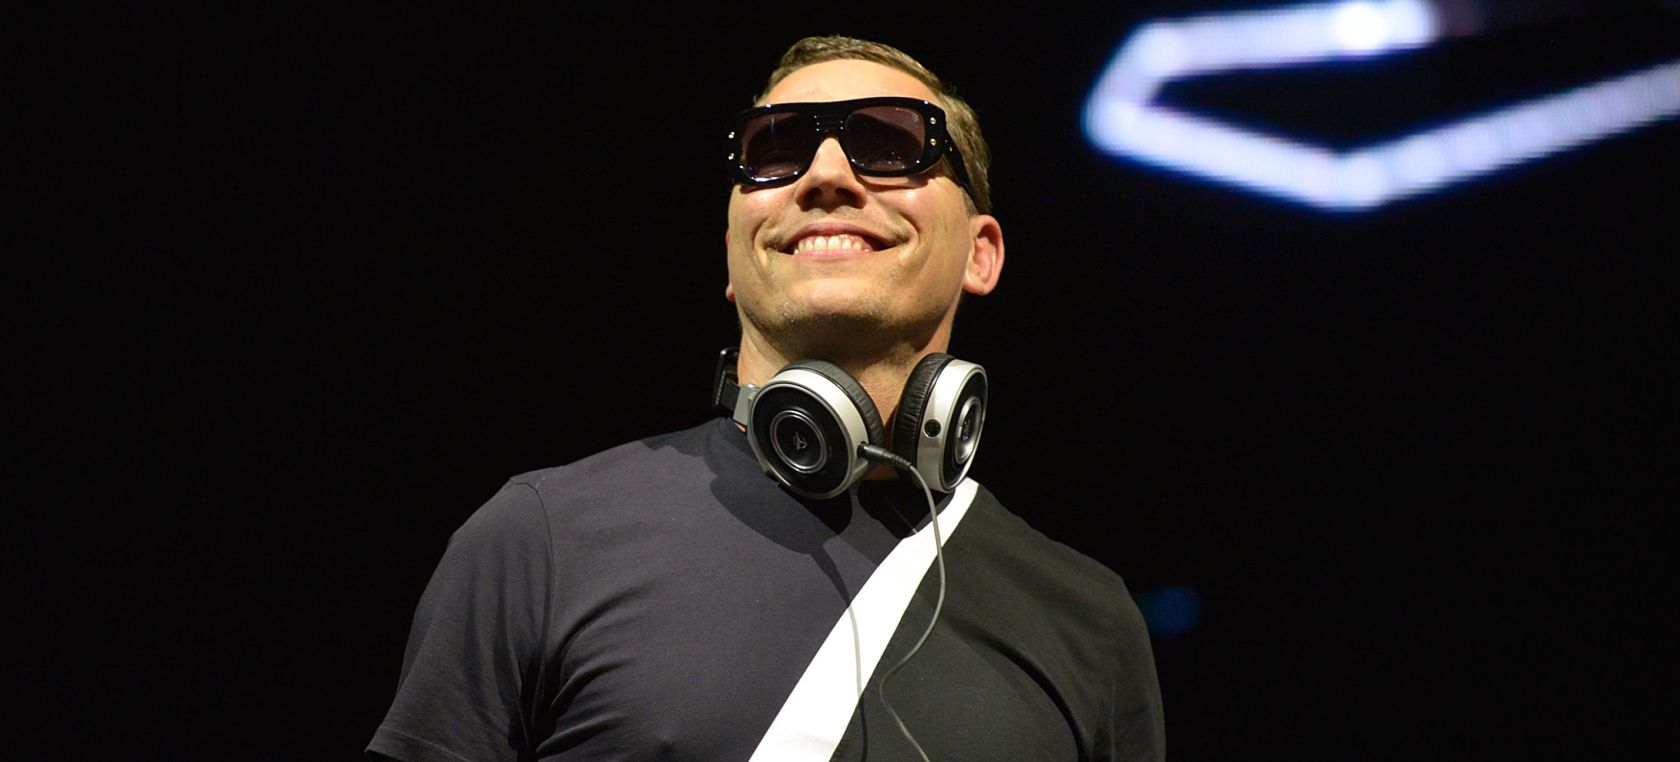 Tiësto busca el mejor remix de ‘The Motto’, su nueva canción con Ava Max: ¿Podrás ser tú?